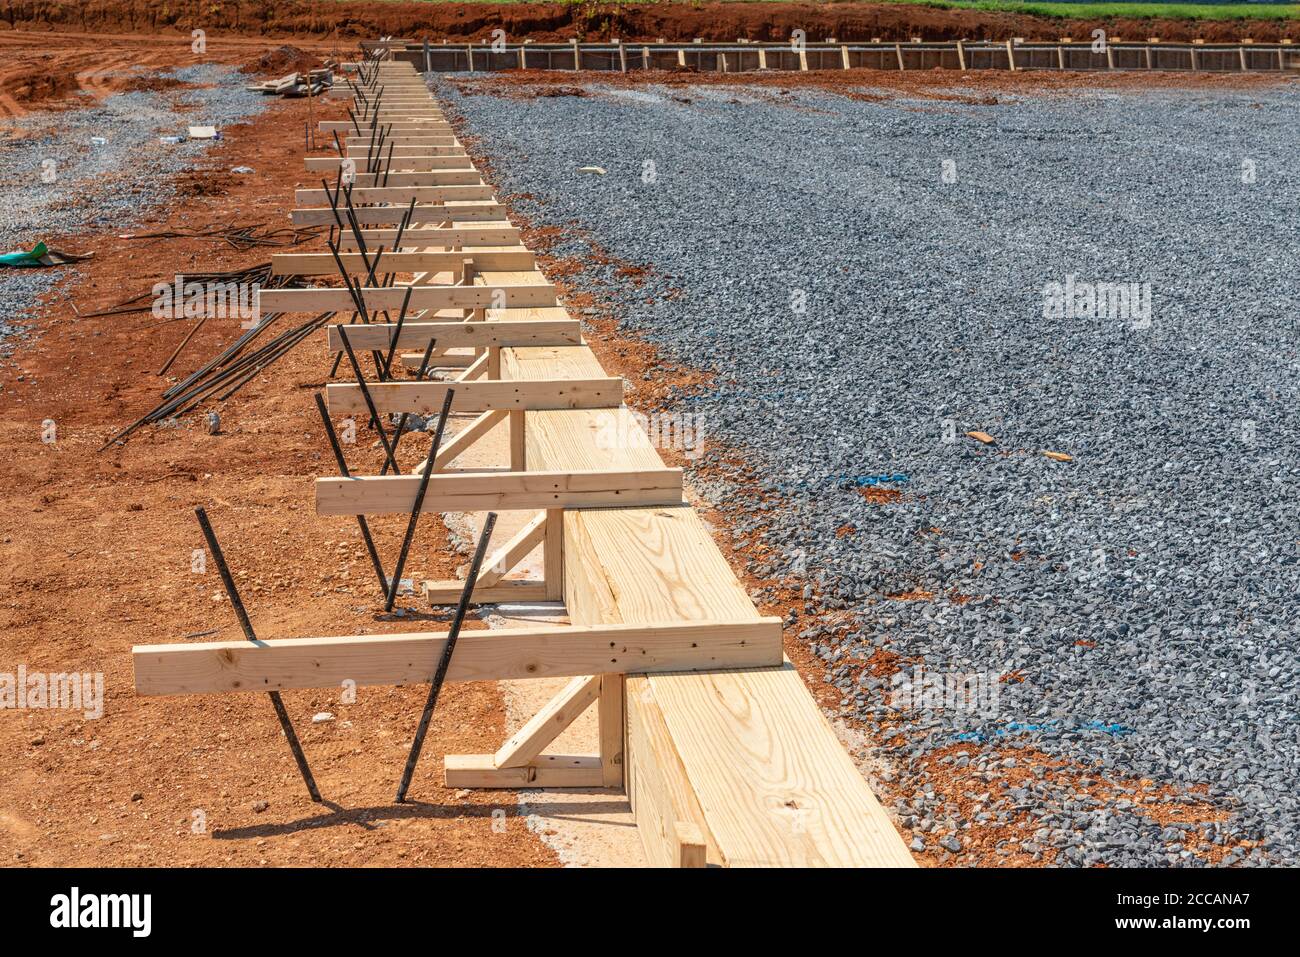 Plan horizontal d'un tas de charpente en bois préparé pour la construction d'une dalle de béton. Banque D'Images